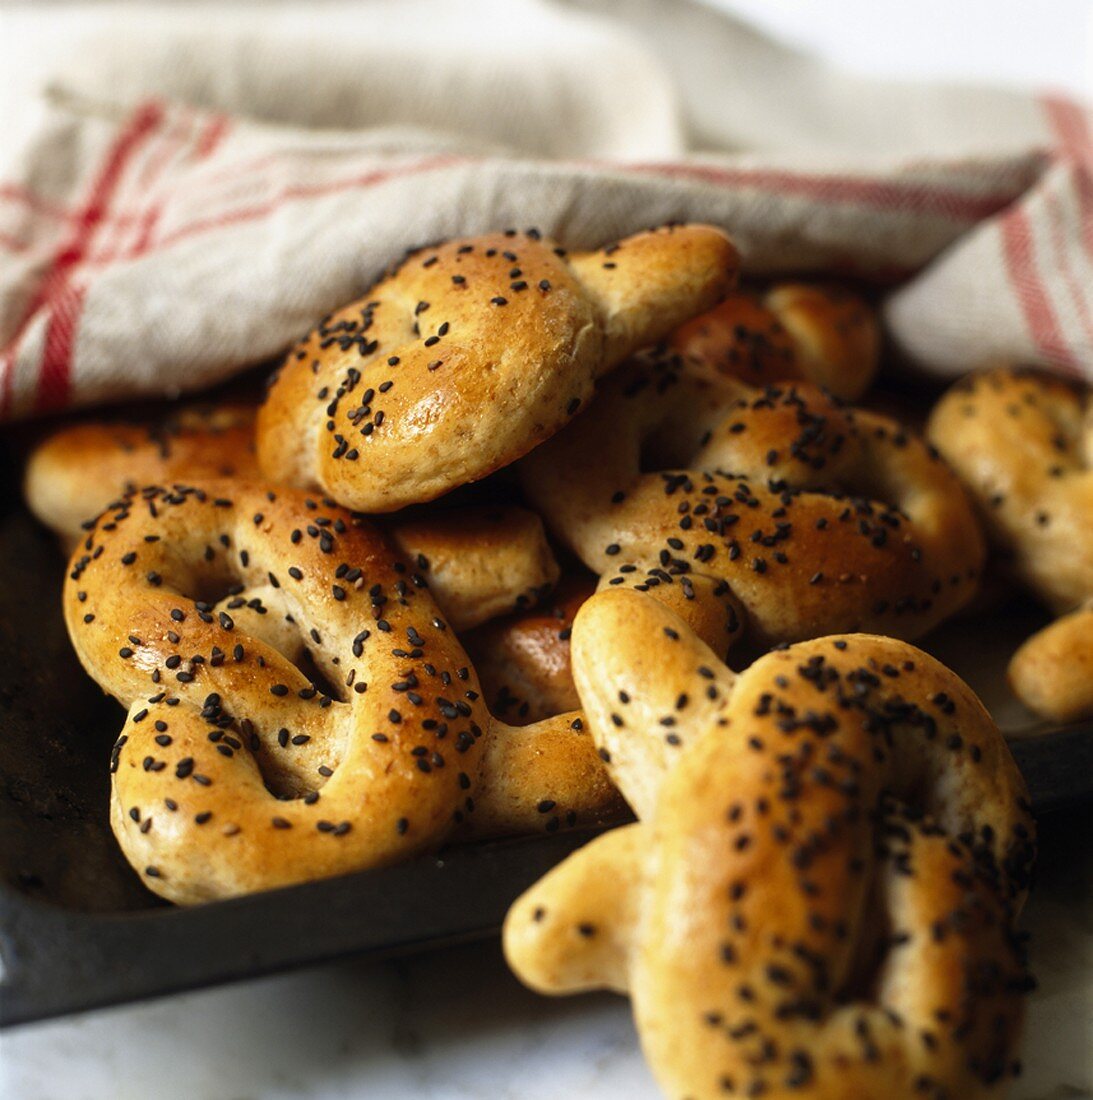 Freshly-baked pretzels with black sesame seeds